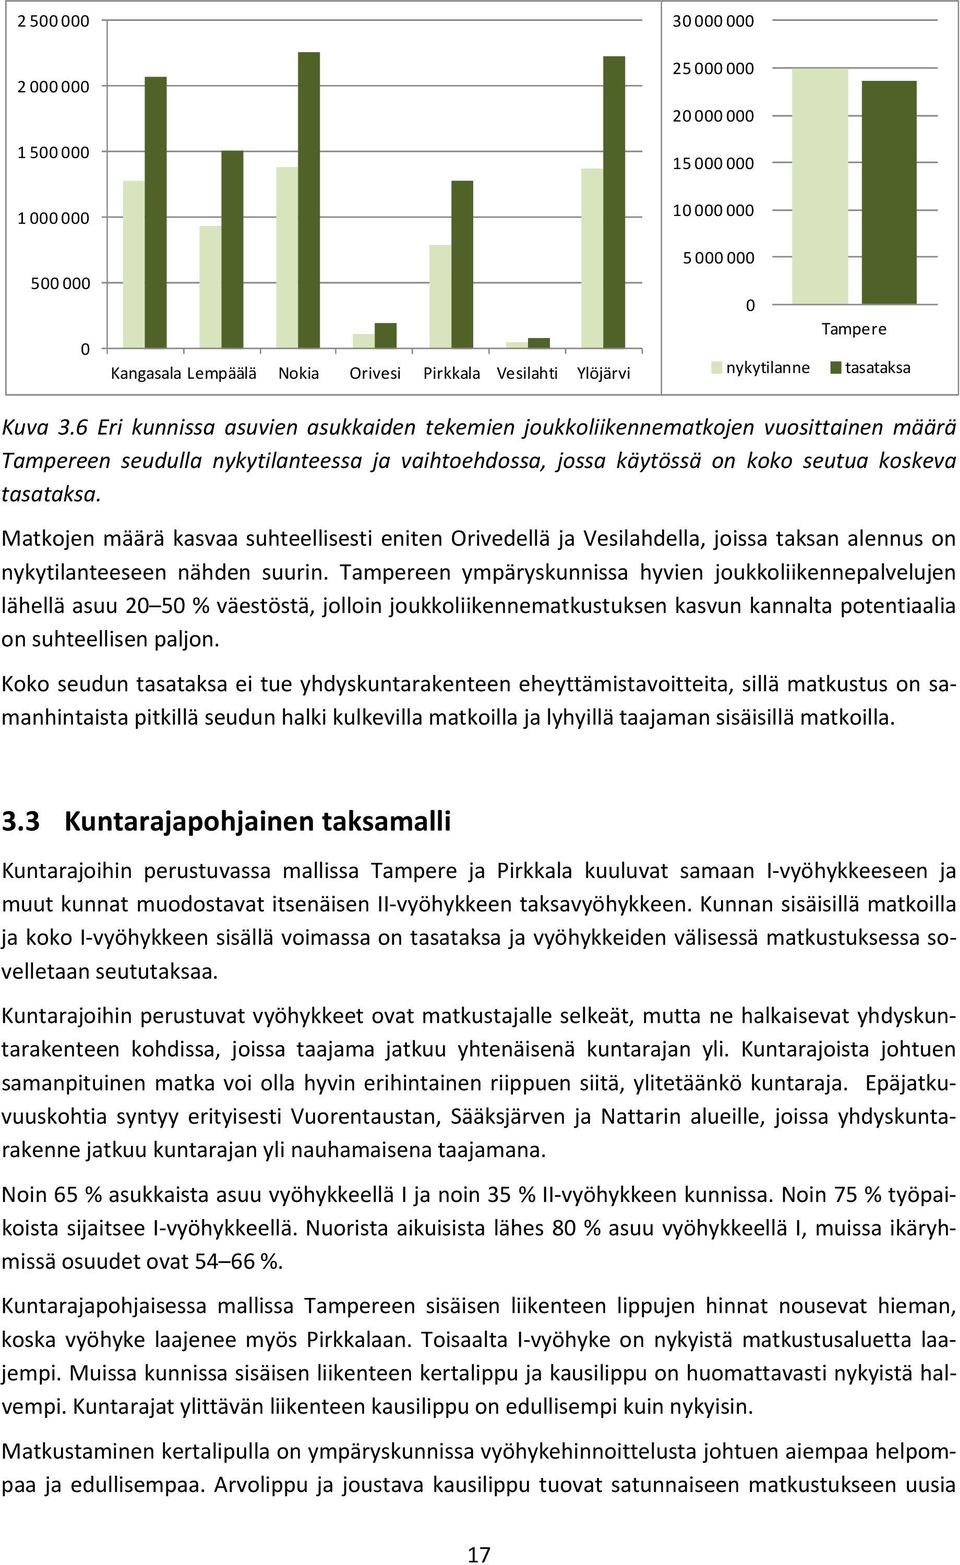 6 Eri kunnissa asuvien asukkaiden tekemien joukkoliikennematkojen vuosittainen määrä Tampereen seudulla nykytilanteessa ja vaihtoehdossa, jossa käytössä on koko seutua koskeva tasataksa.